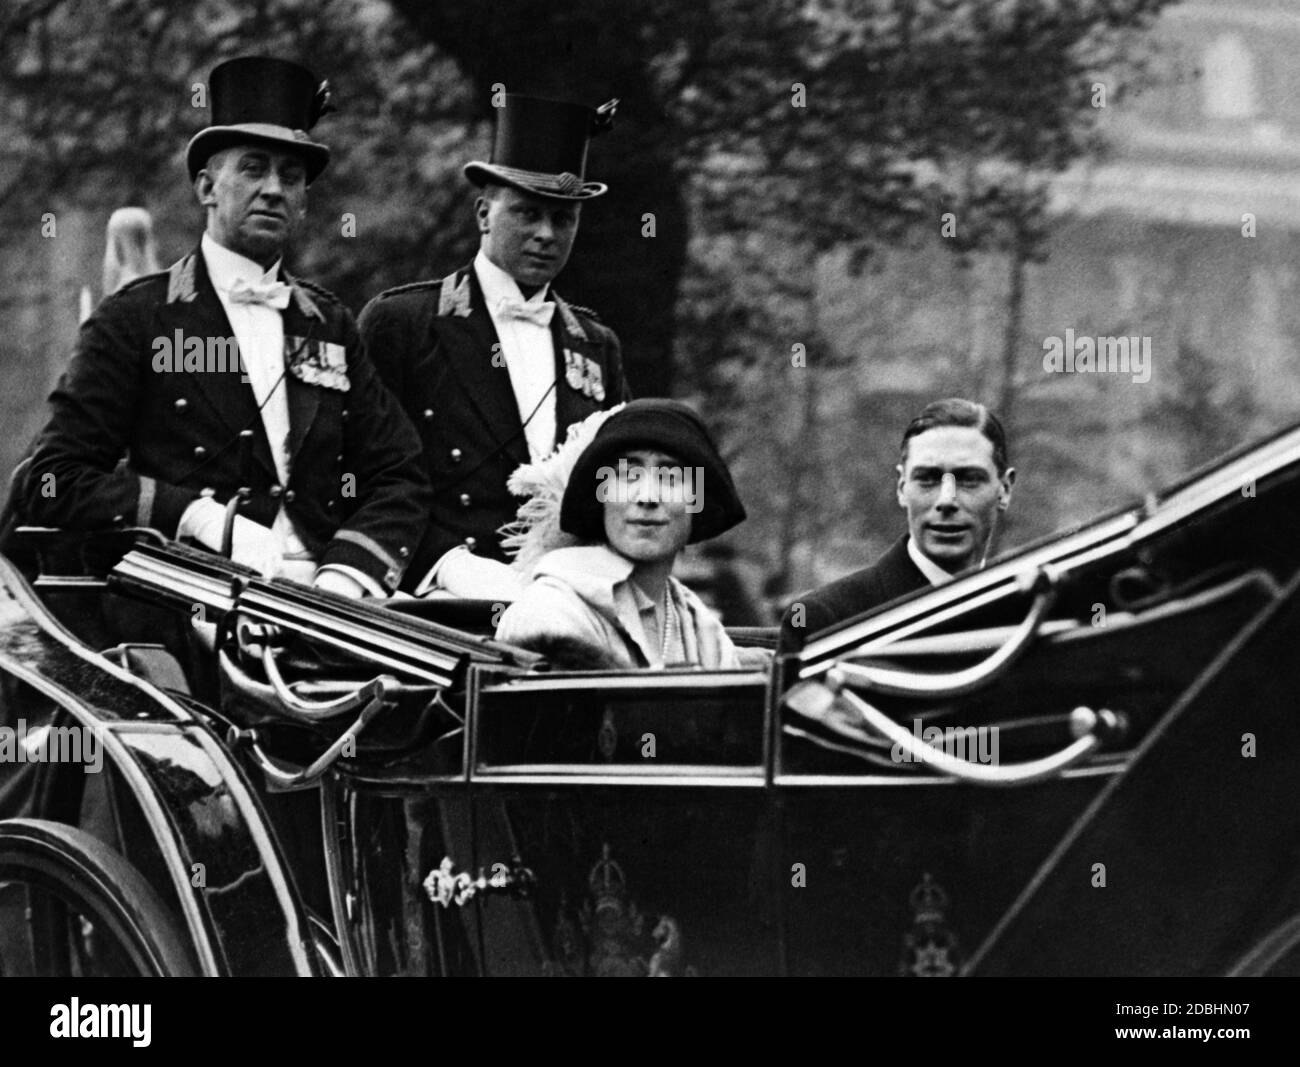 George, duc d'York et plus tard le roi George VI, avec sa femme Elizabeth lors d'un trajet en calèche. Photo non datée, c. 1925. Banque D'Images